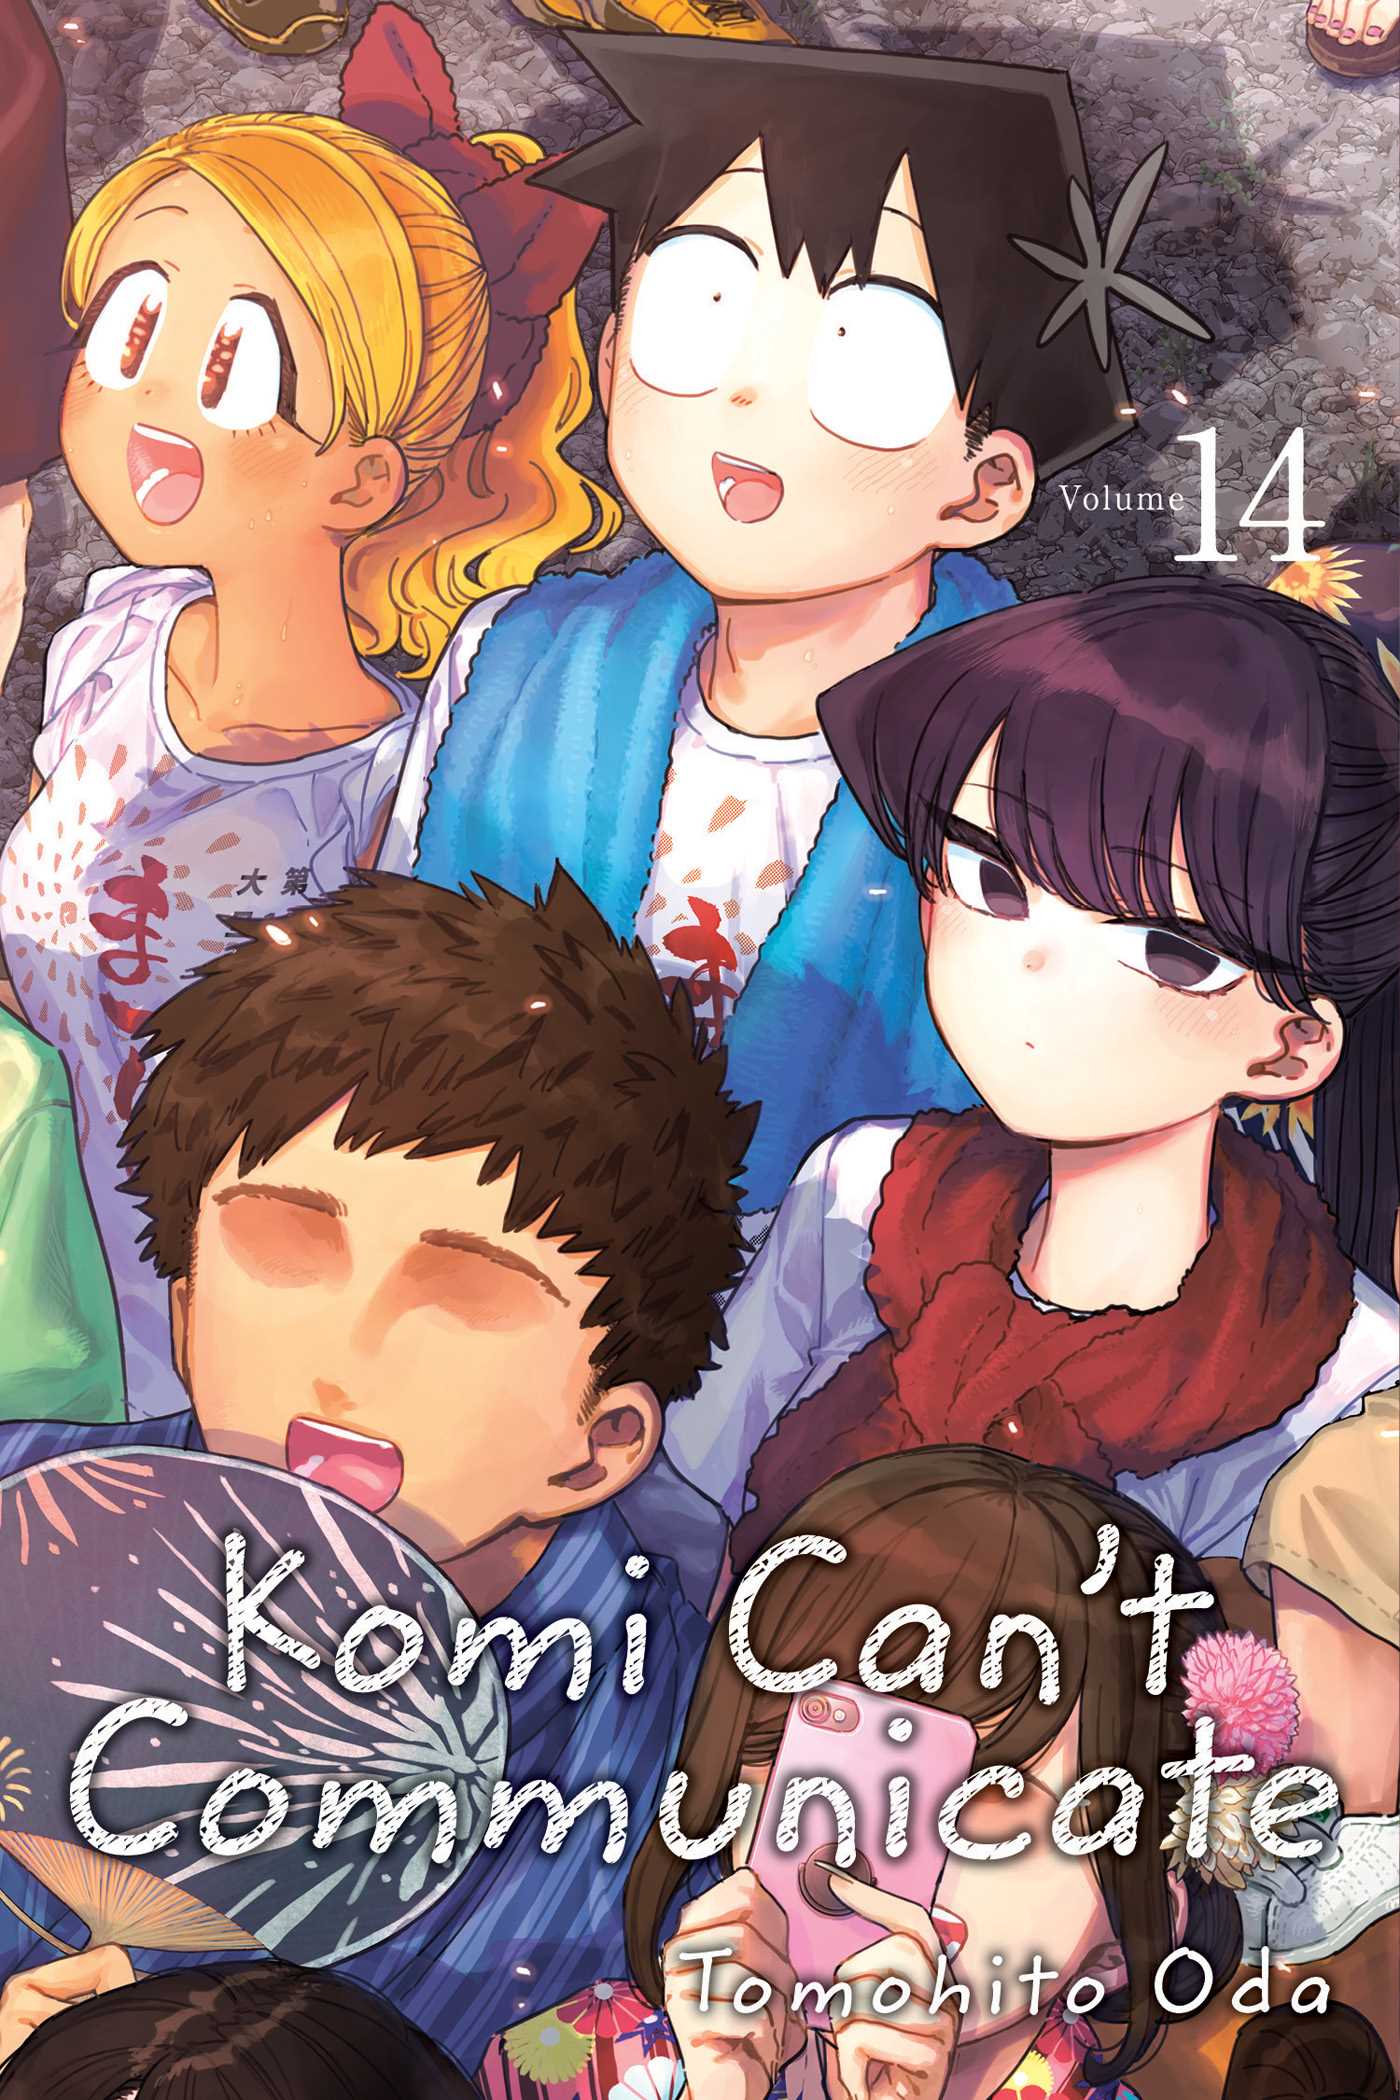 Komi-san wa, Komyushou desu. Capítulo 152 - Manga Online